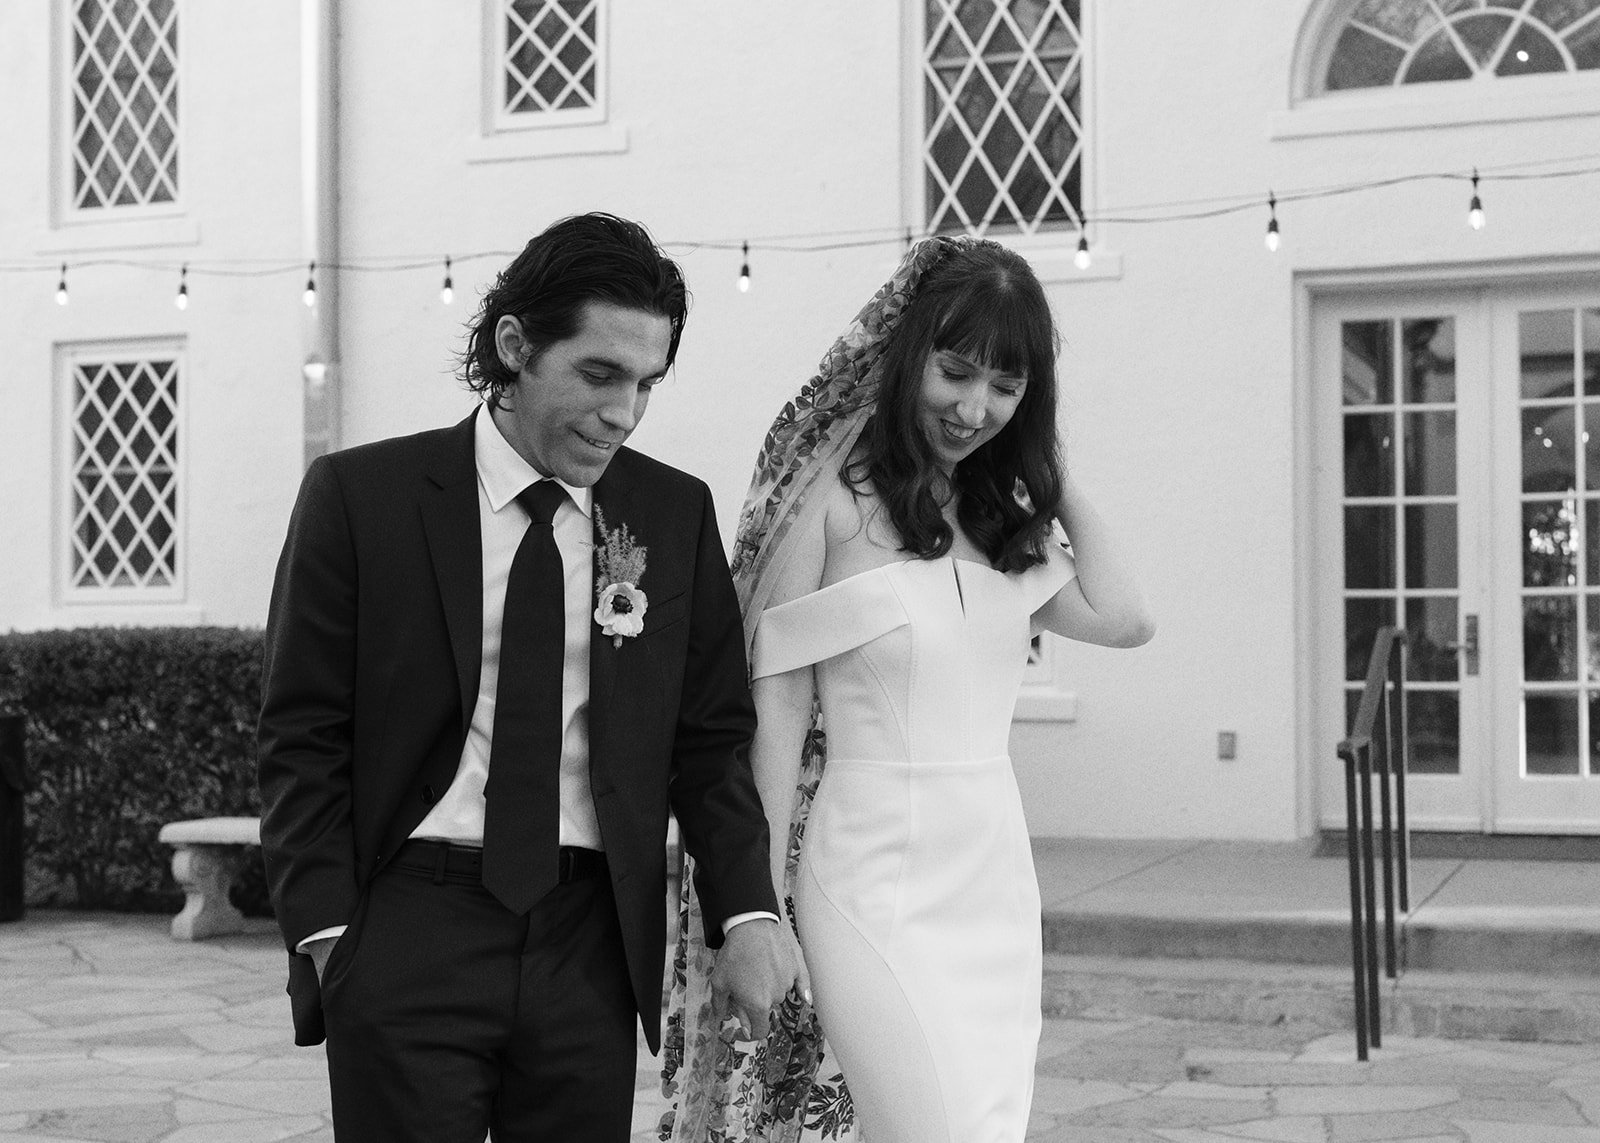 Best-Austin-Wedding-Photographers-Elopement-Film-35mm-Asheville-Santa-Barbara-Laguna-Gloria-46.jpg